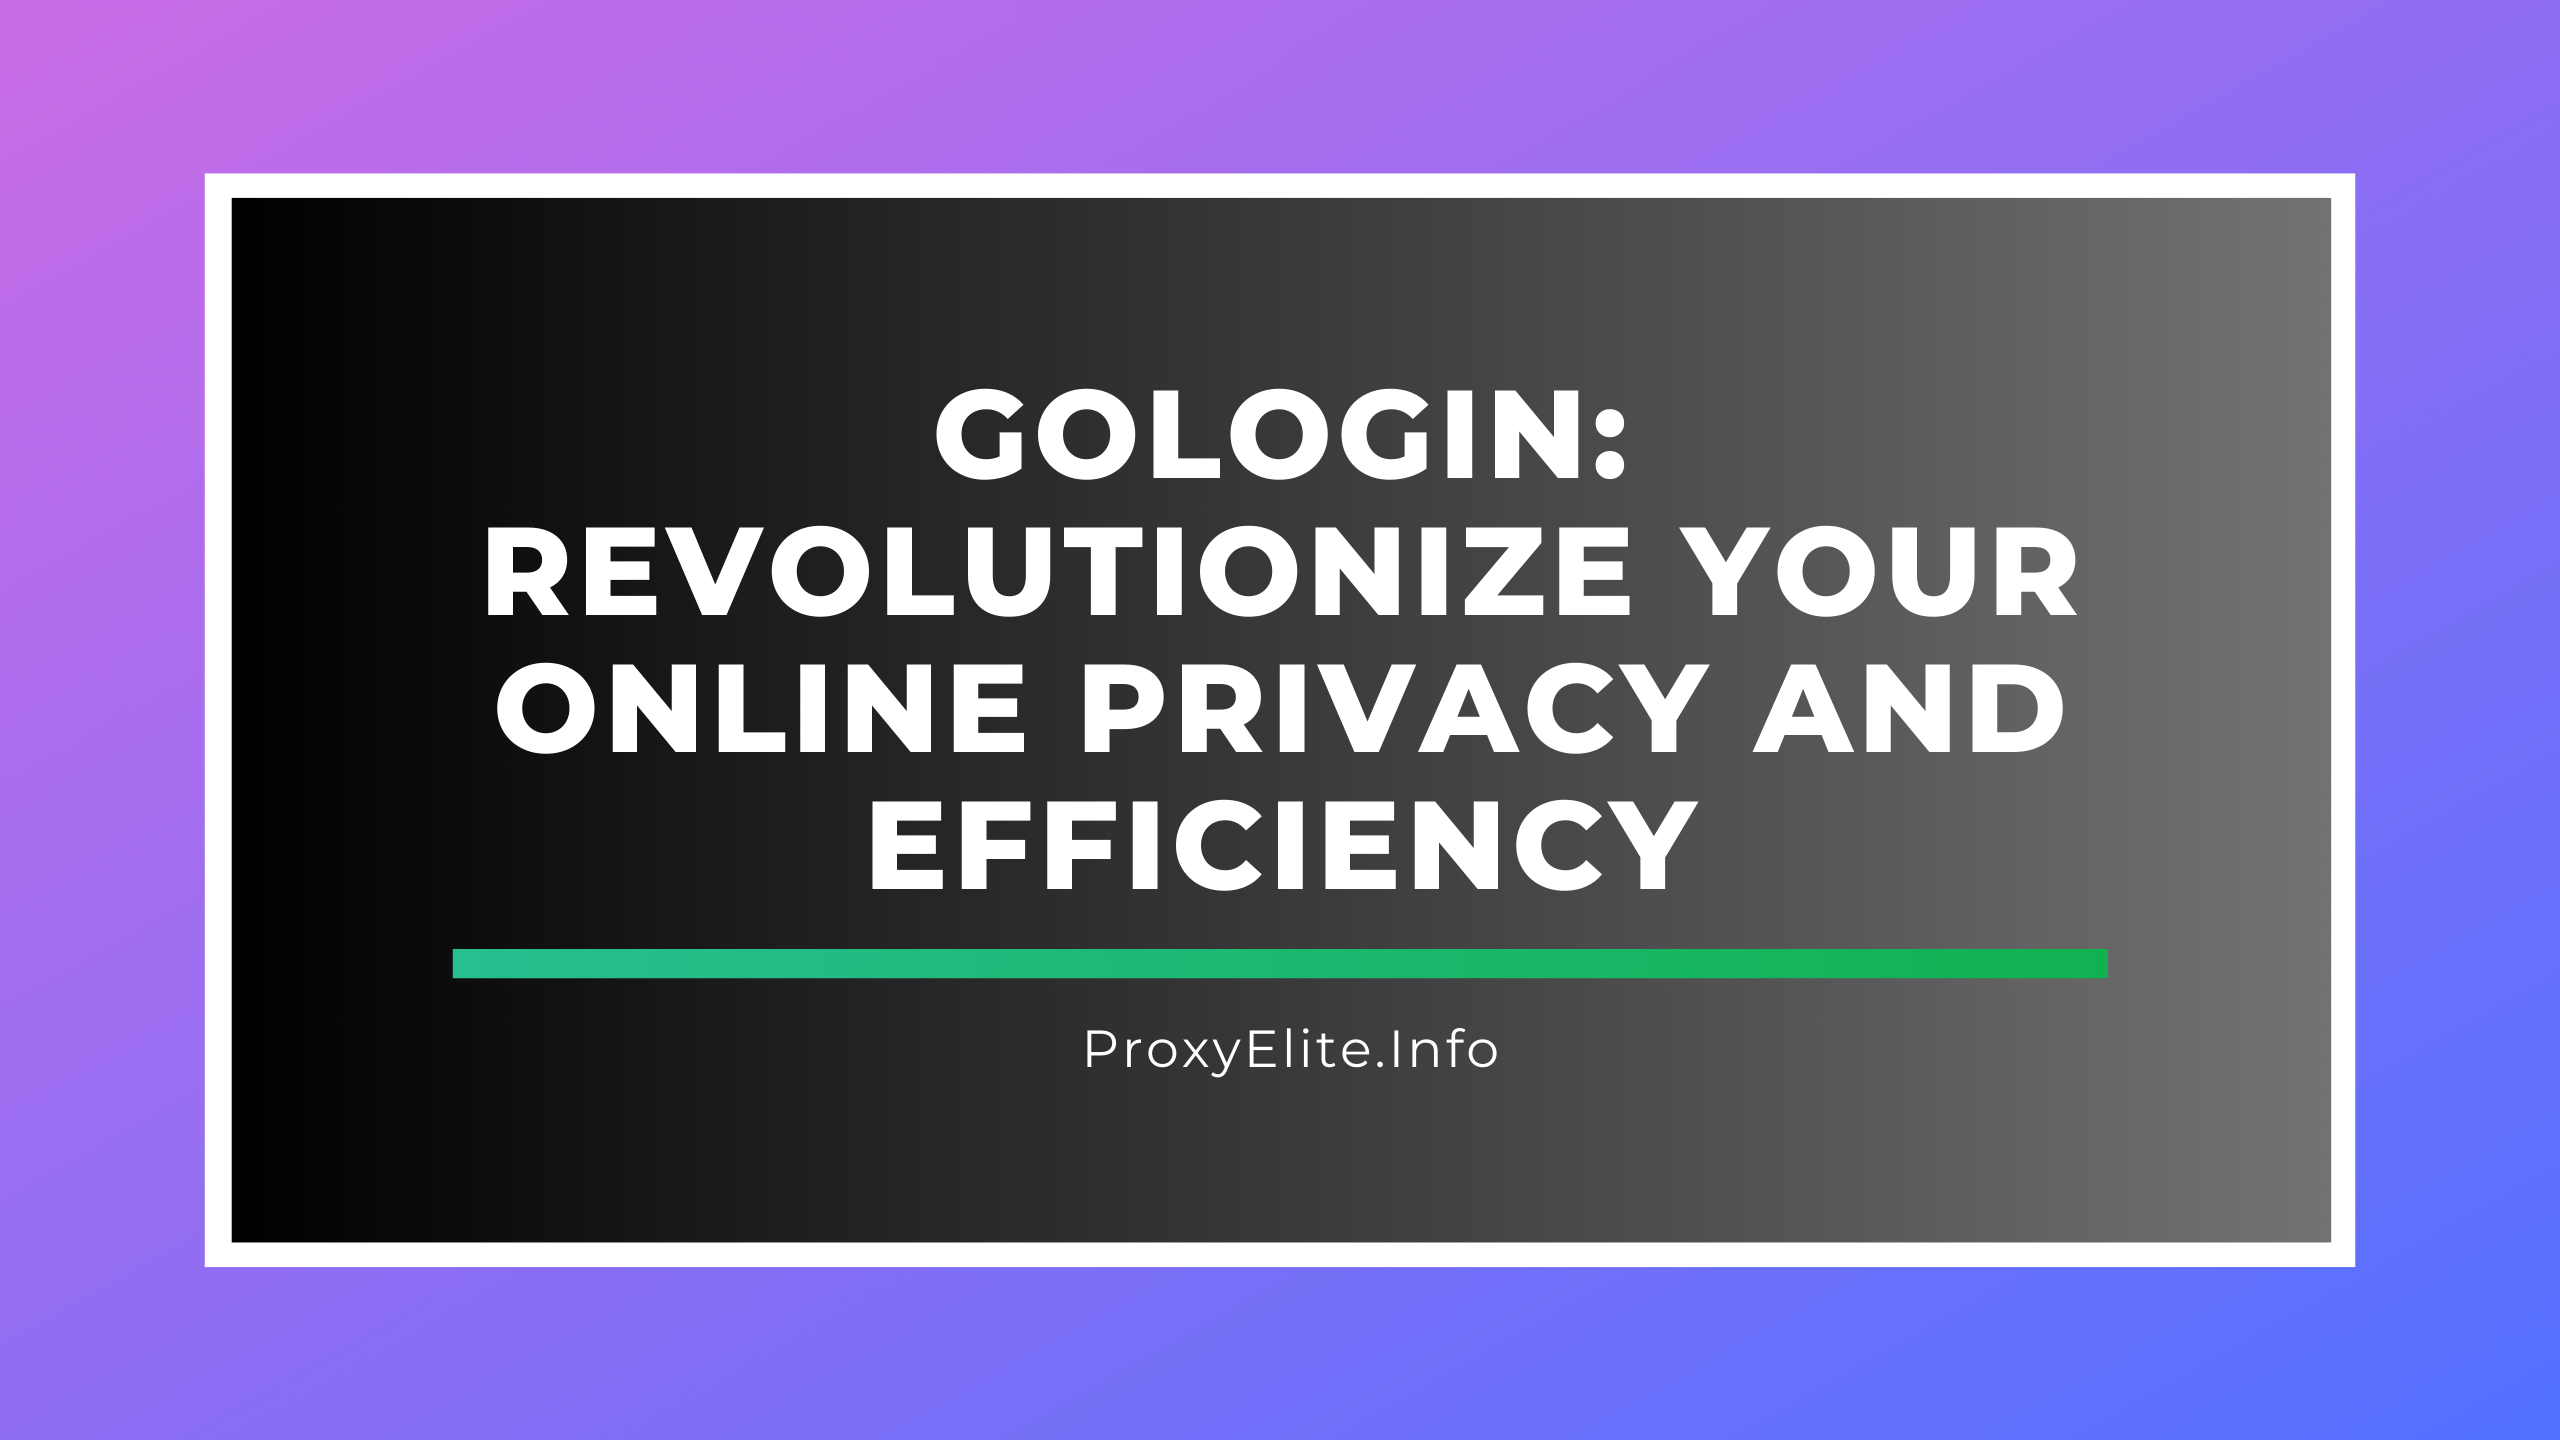 GoLogin: зробіть революцію у вашій конфіденційності та ефективності в Інтернеті